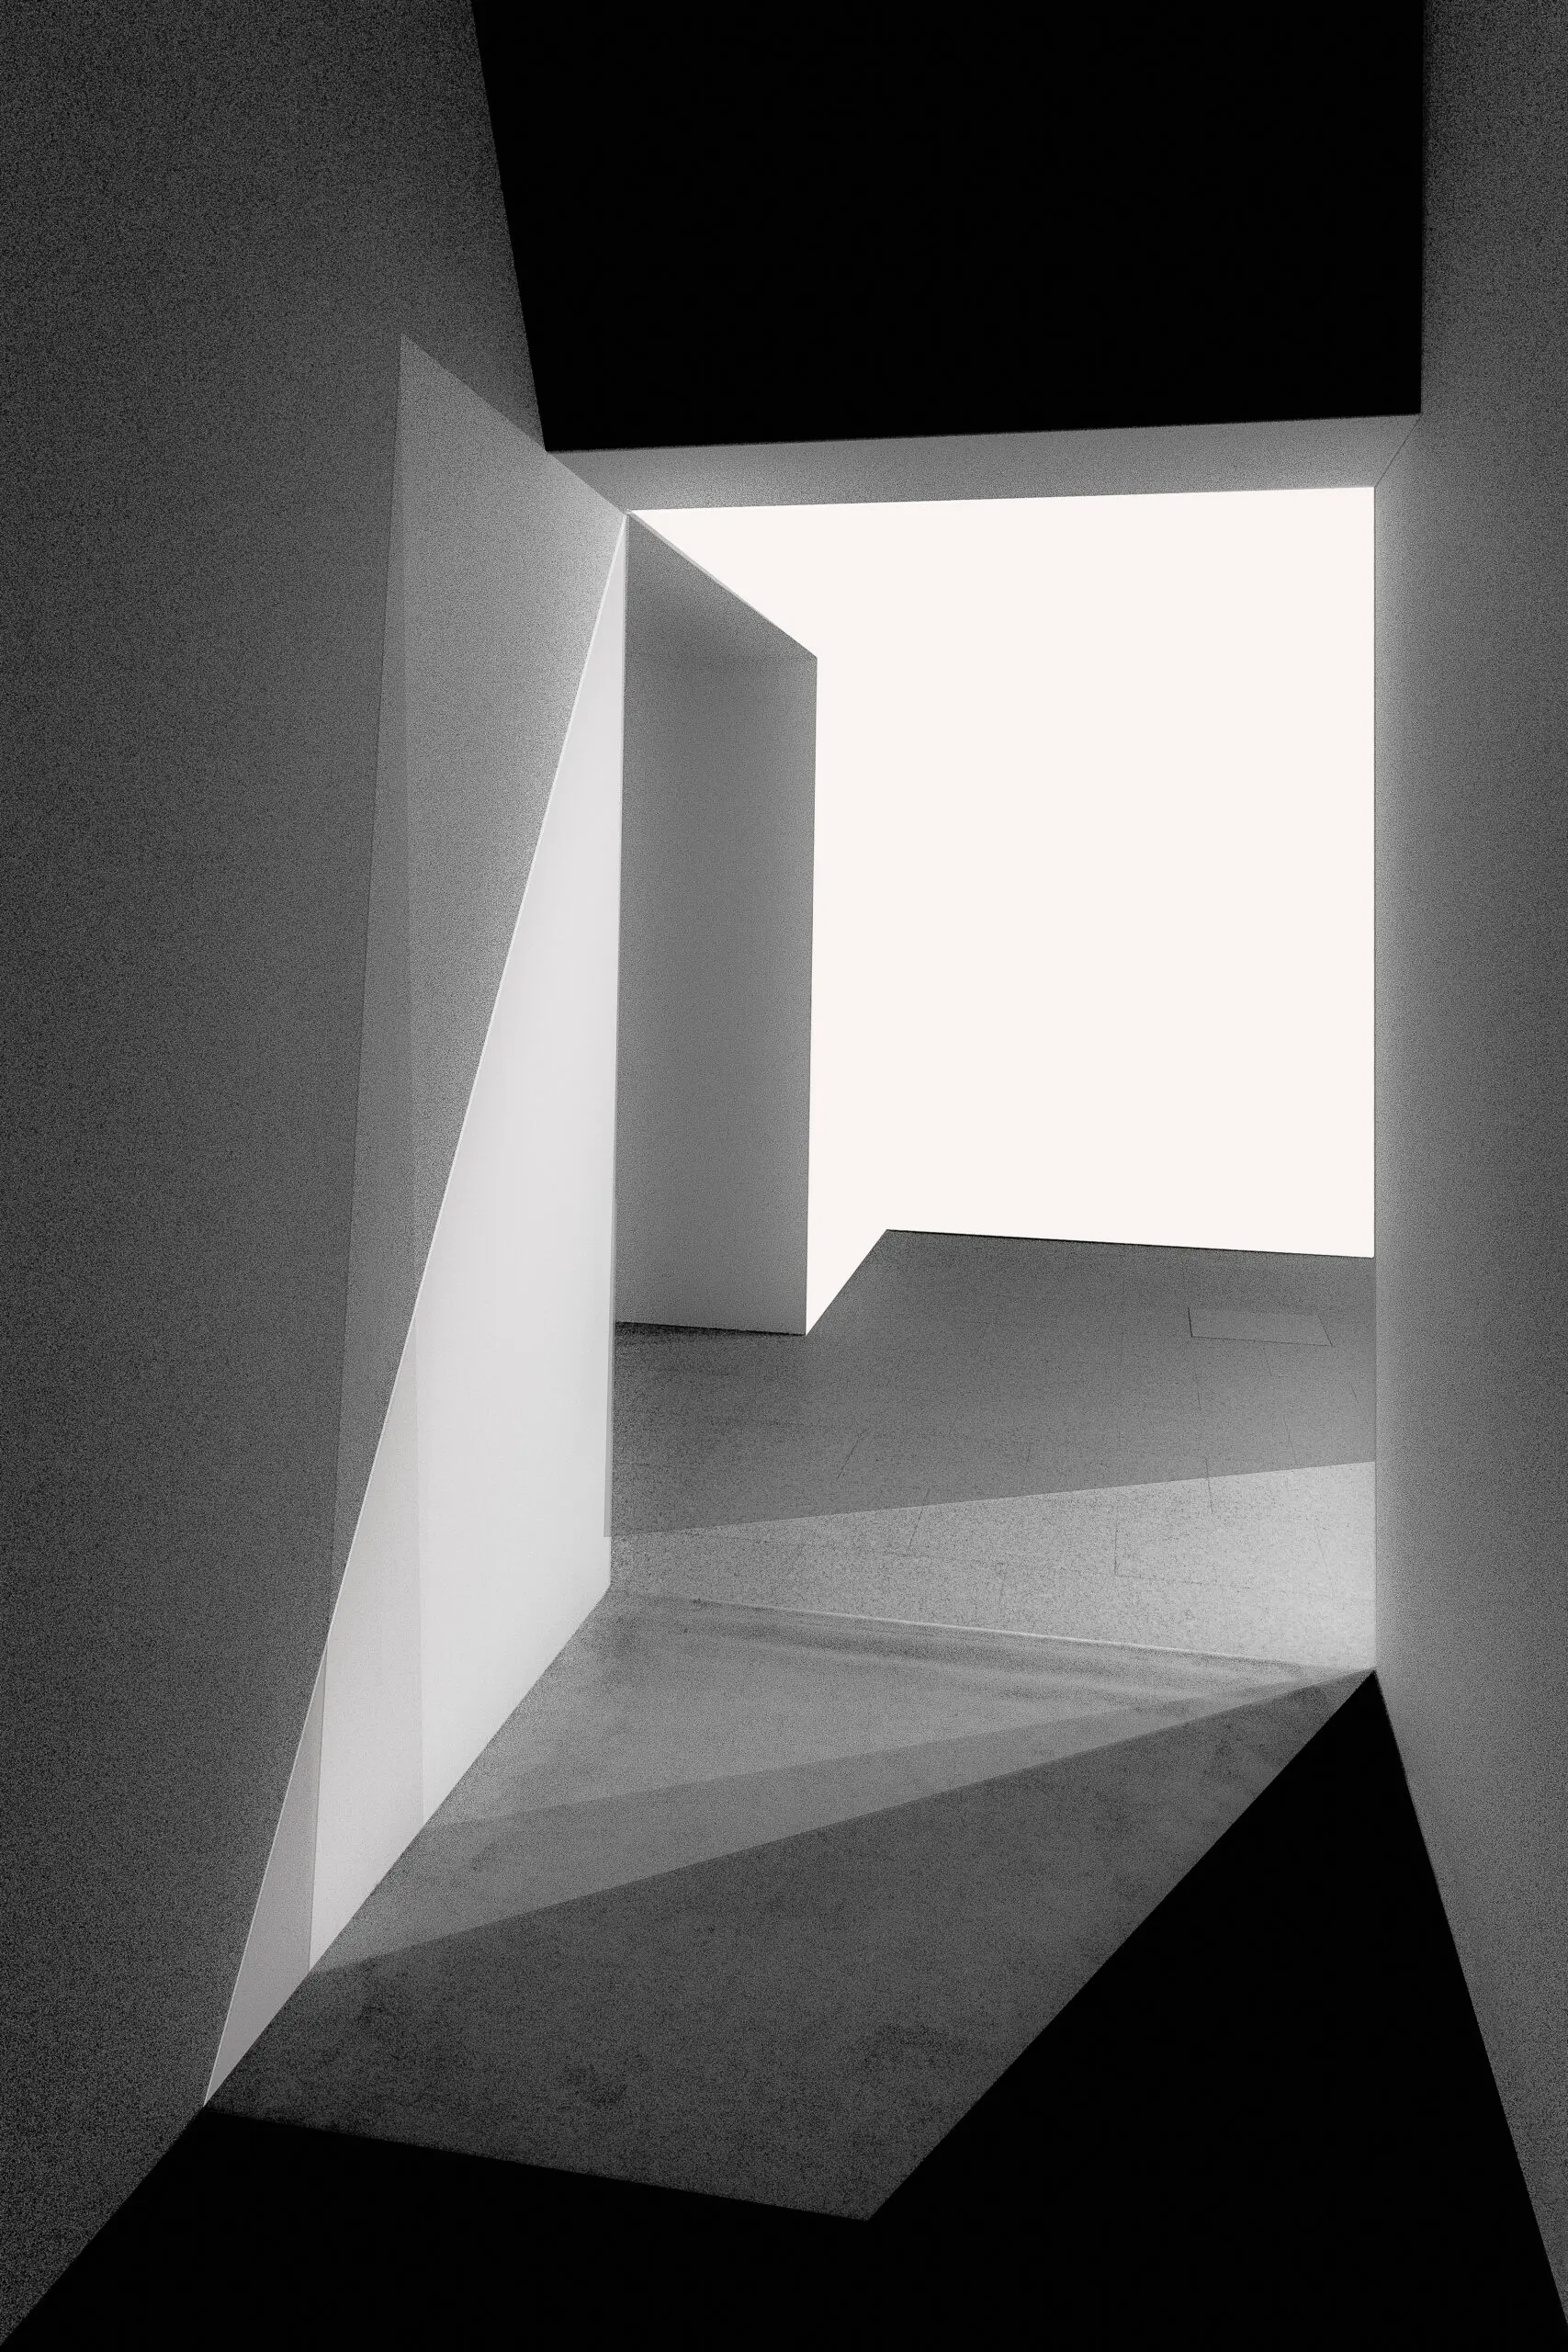 Wandbild (5528) Light and Shadows by Inge Schuster 1x.com präsentiert: Architektur,Abstrakt,Sonstige Architektur